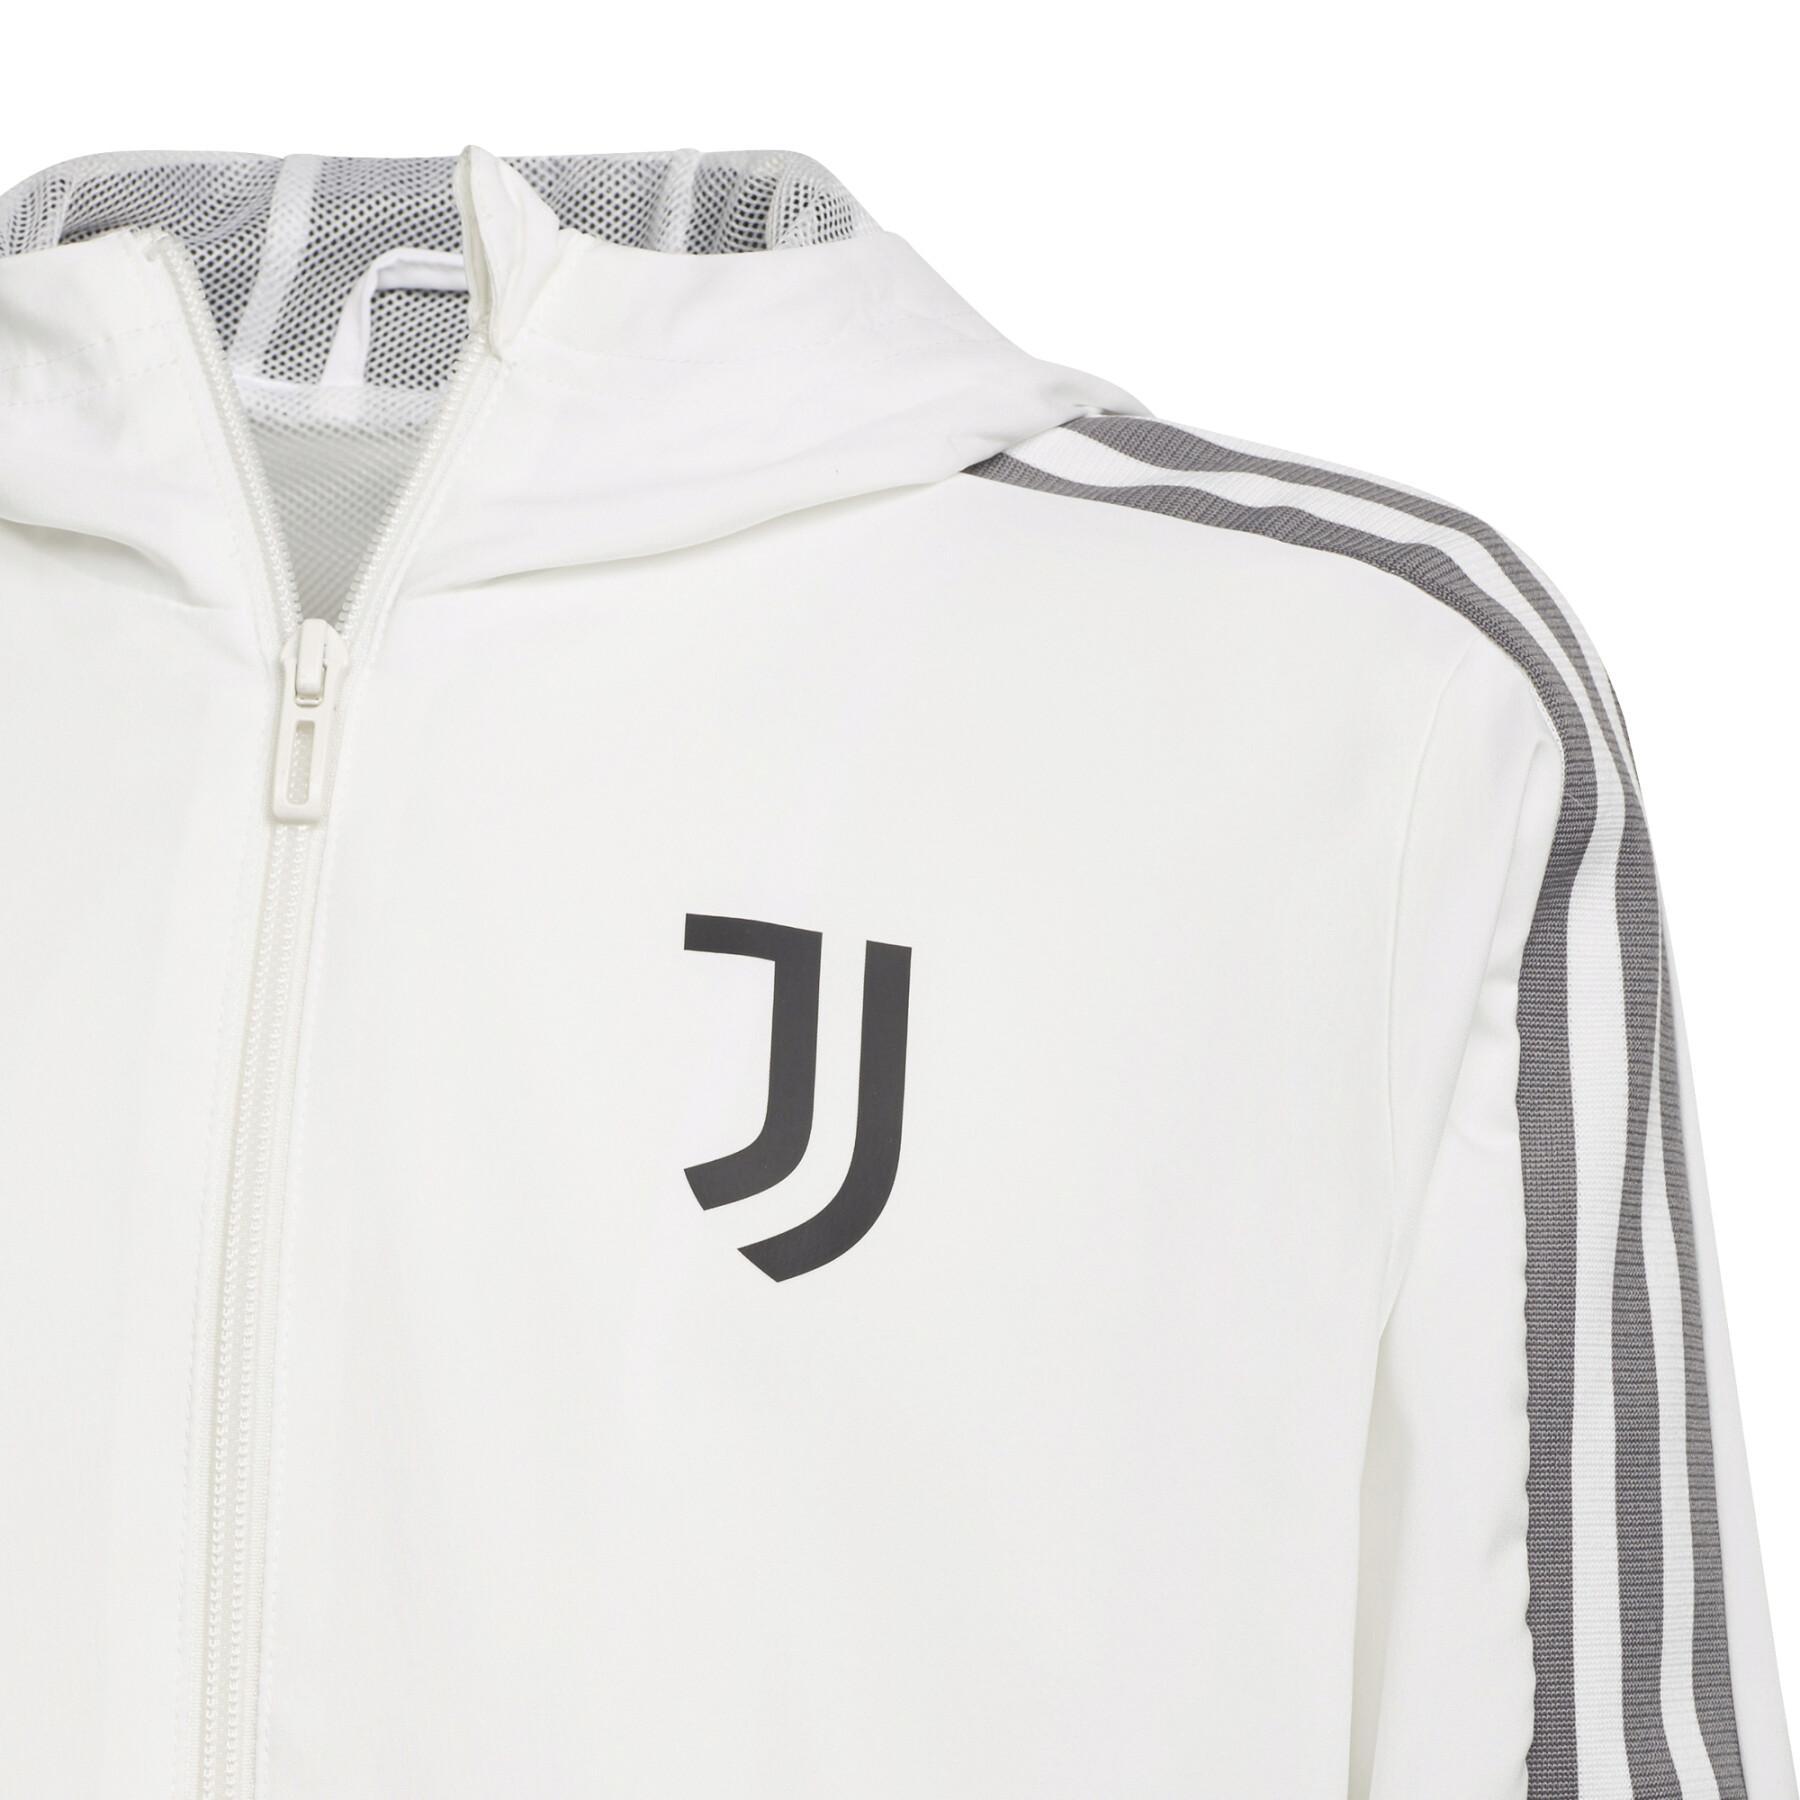 Child presentation jacket Juventus Turin